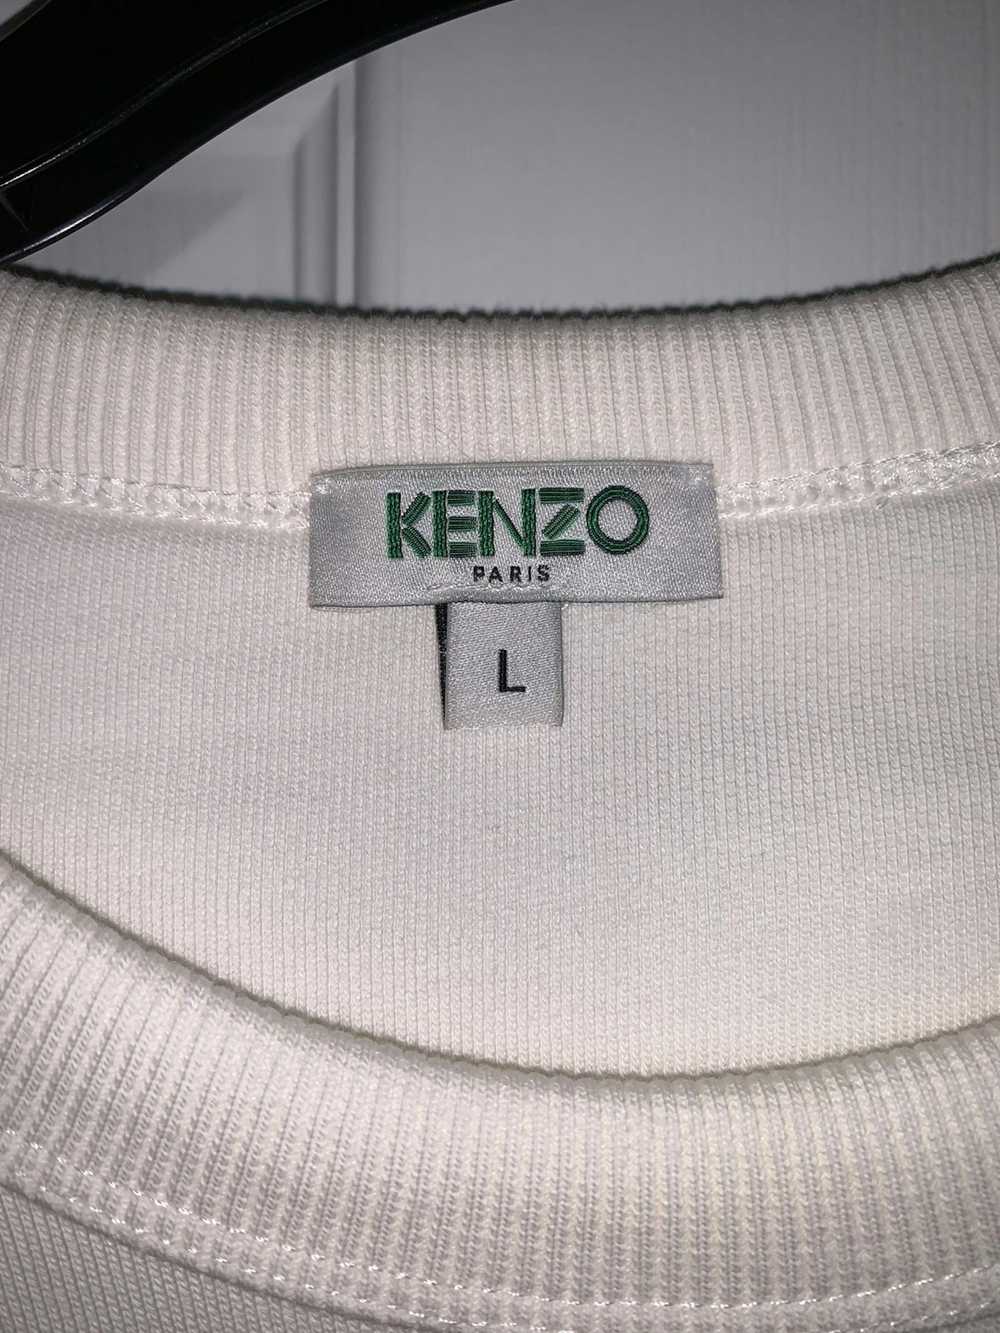 Kenzo Kenzo Sweatshirt (supreme, palace, adidas, … - image 3